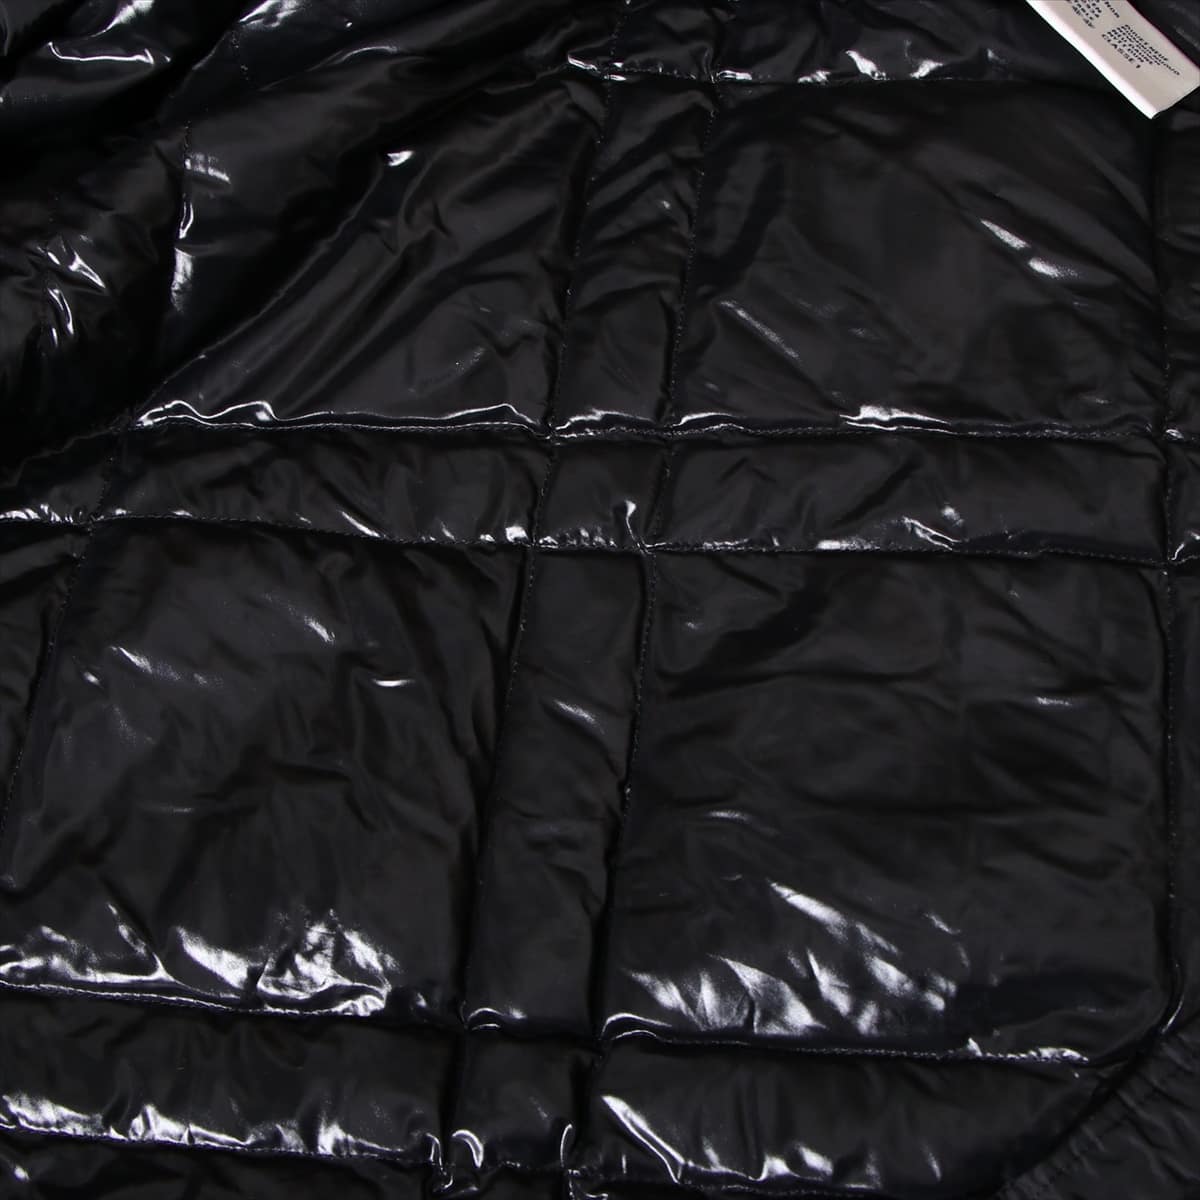 Moncler Nylon Coach jacket 3 Men's Black 16AW MATTHIEU Down jacket